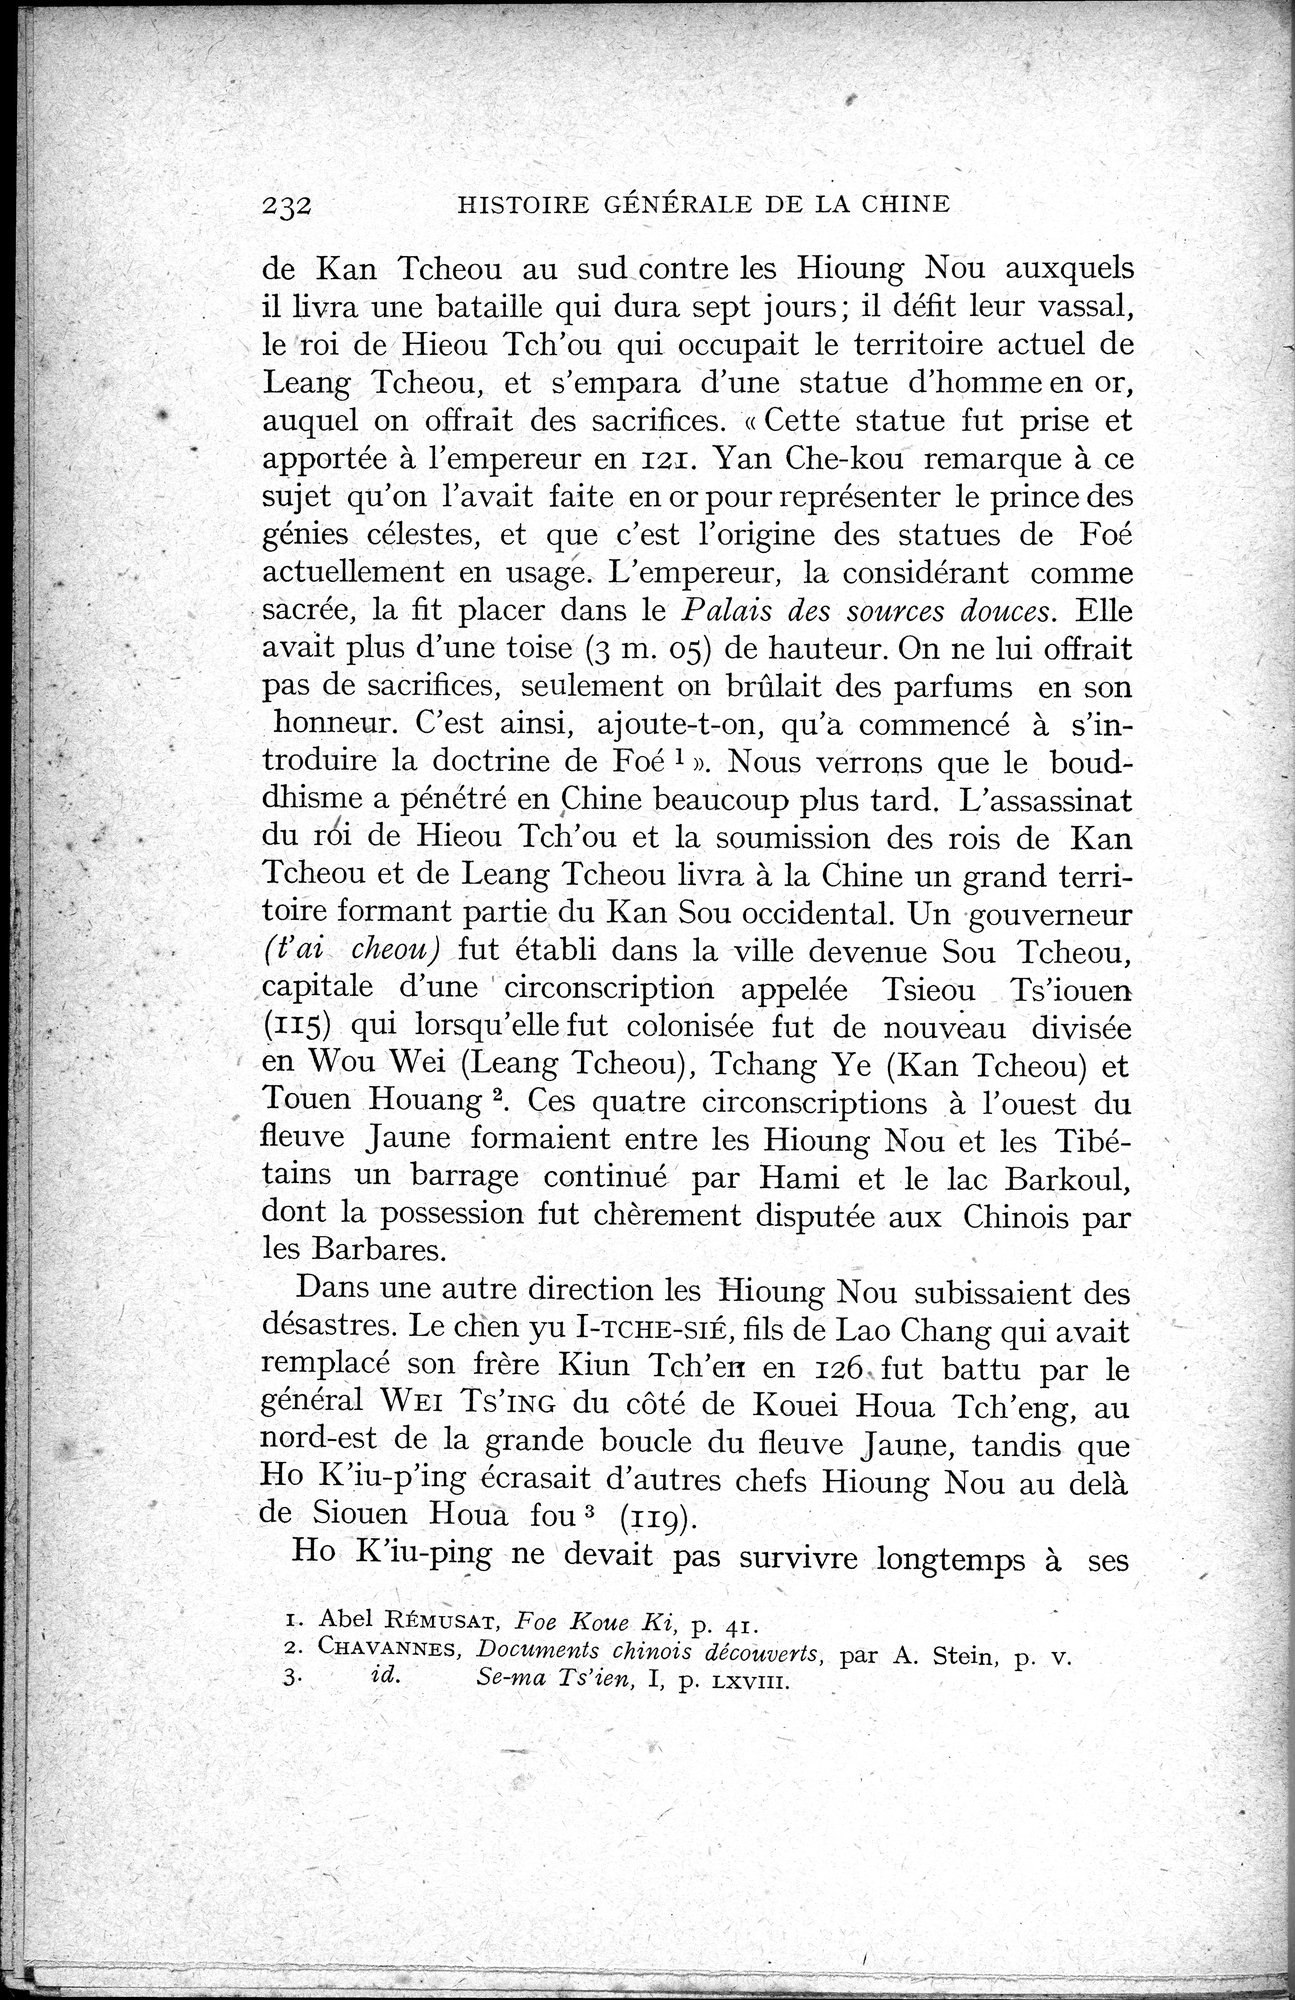 Histoire Générale de la Chine : vol.1 / Page 234 (Grayscale High Resolution Image)